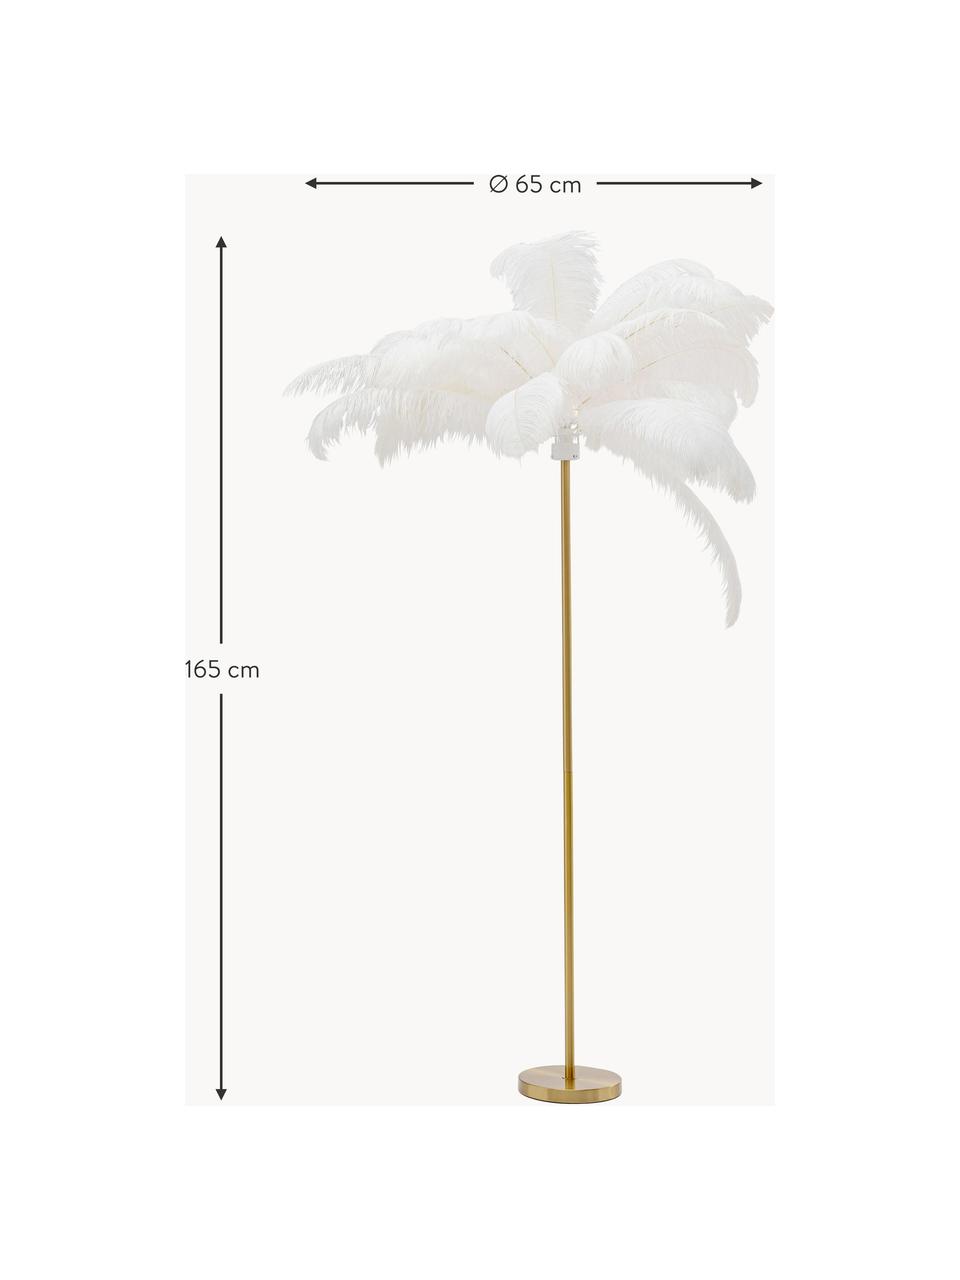 Lampa podłogowa Feather Palm, Złoty, biały, W 165 cm